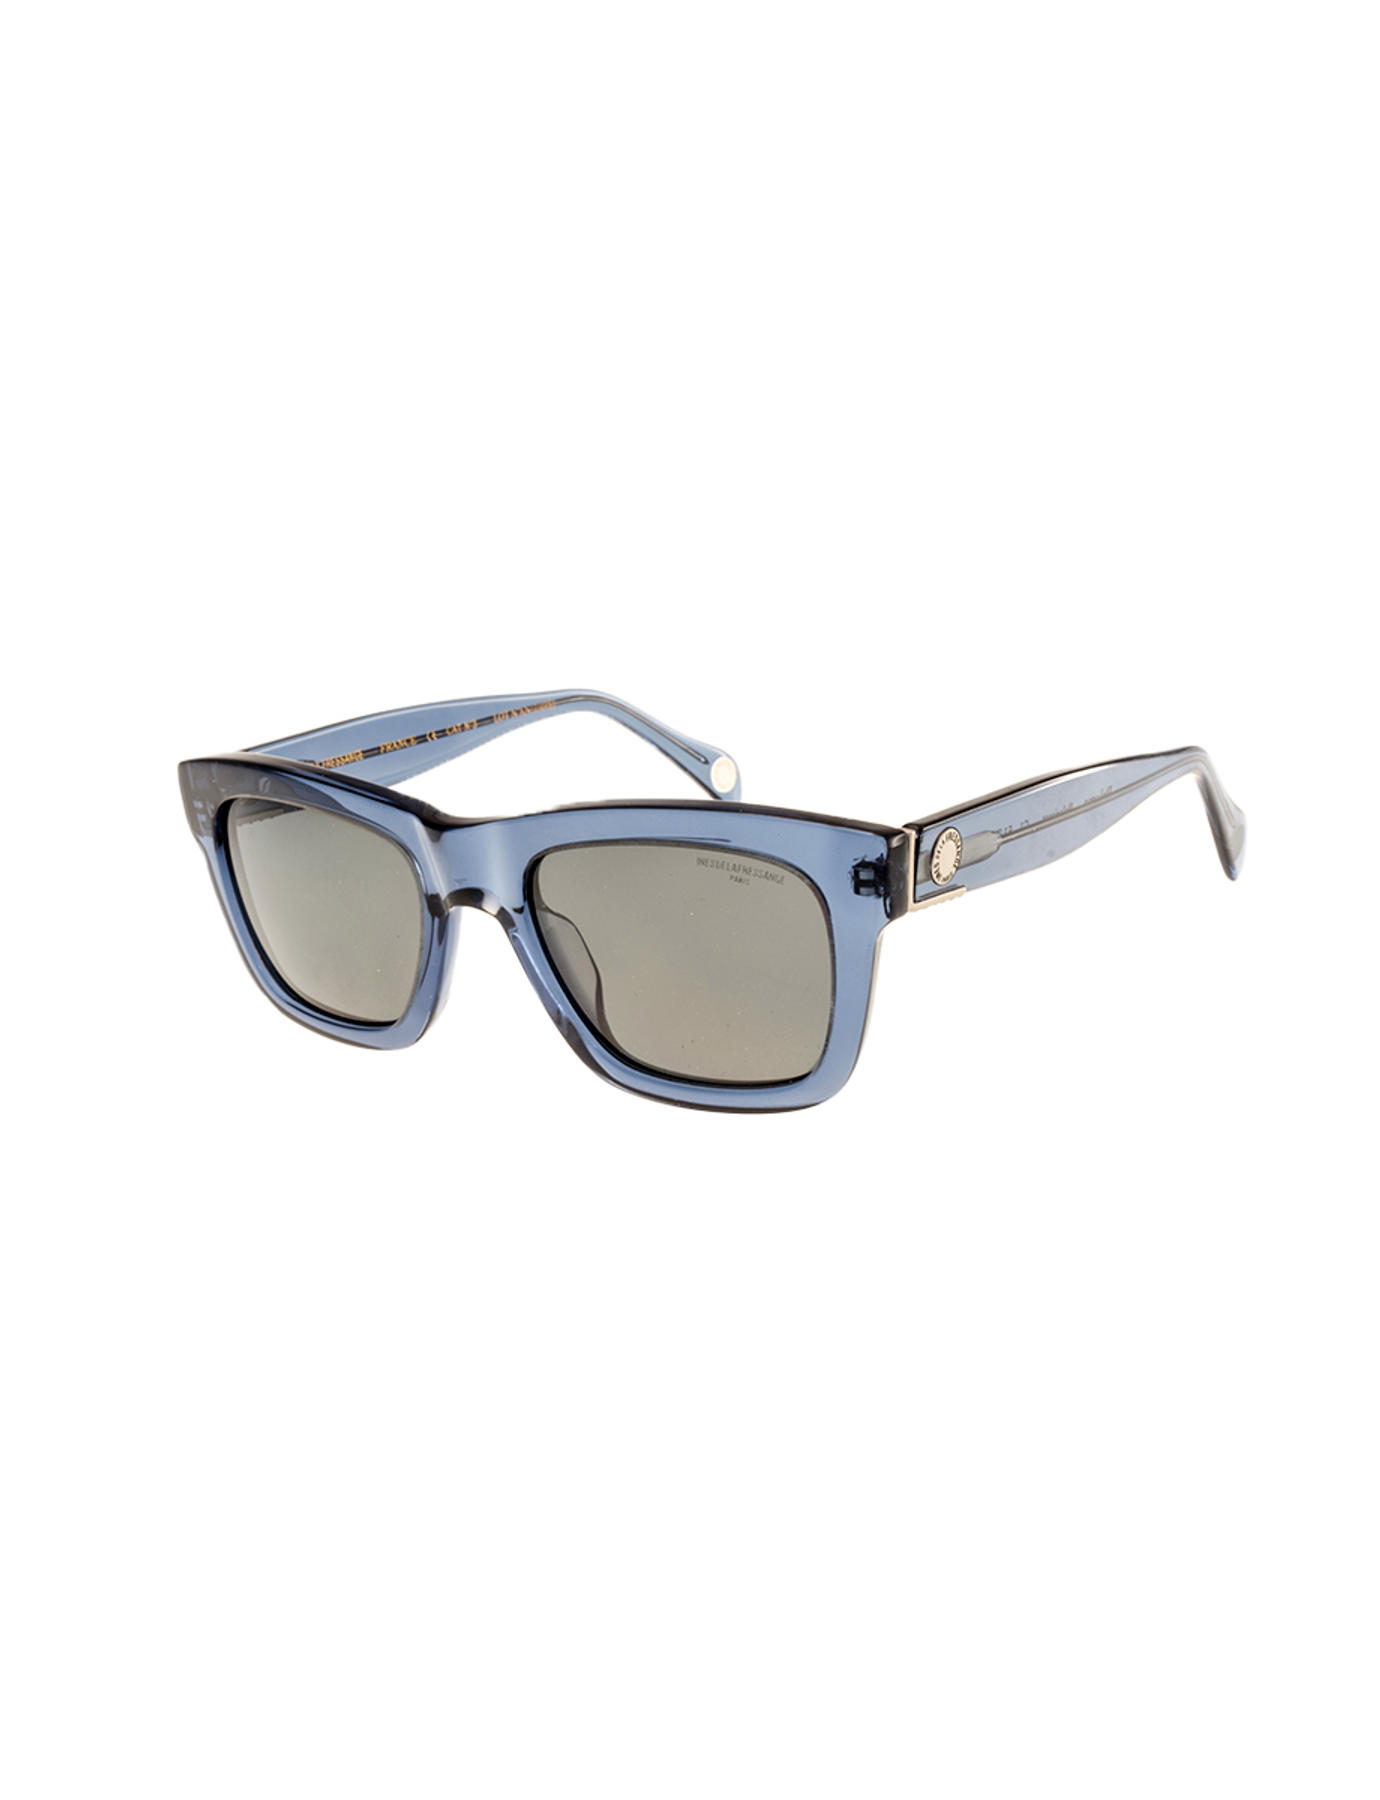 occhiali da sole-acetato-paloma-blu